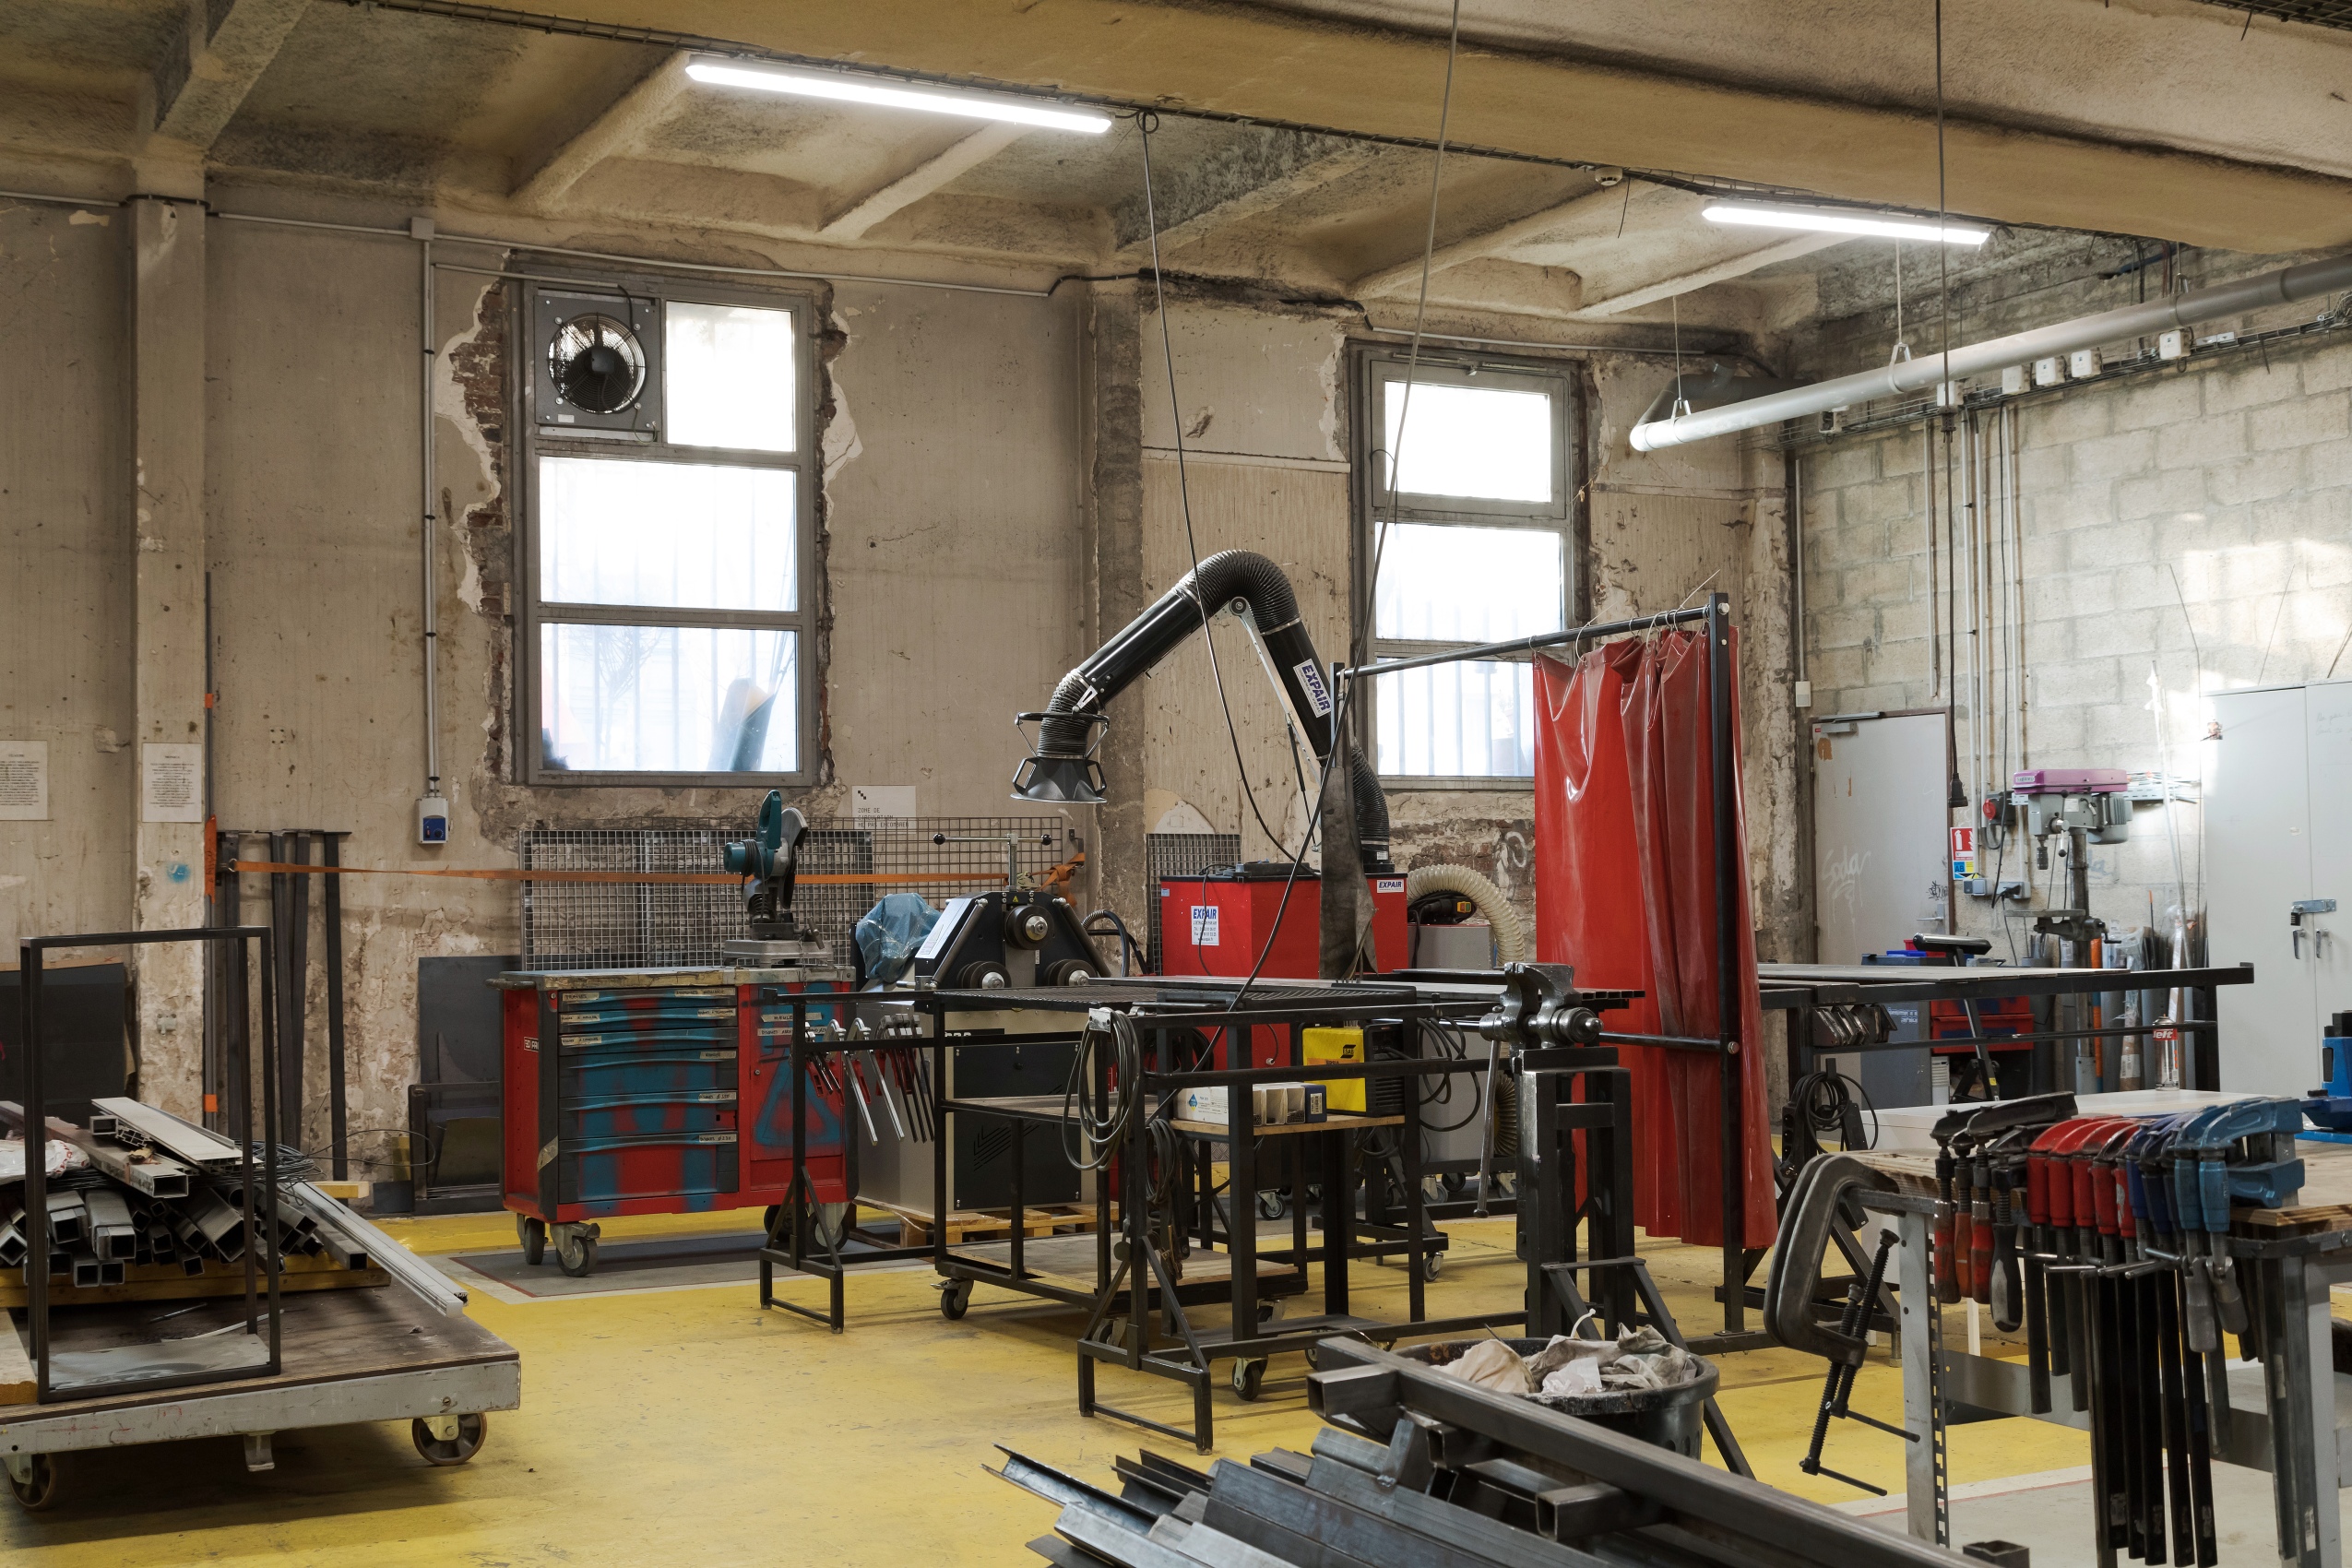 Dans un grand espace au sol jaune, de nombreuses machines et outils sont soigneusement rangées : étaux, scie circulaire ou profilés en acier. 